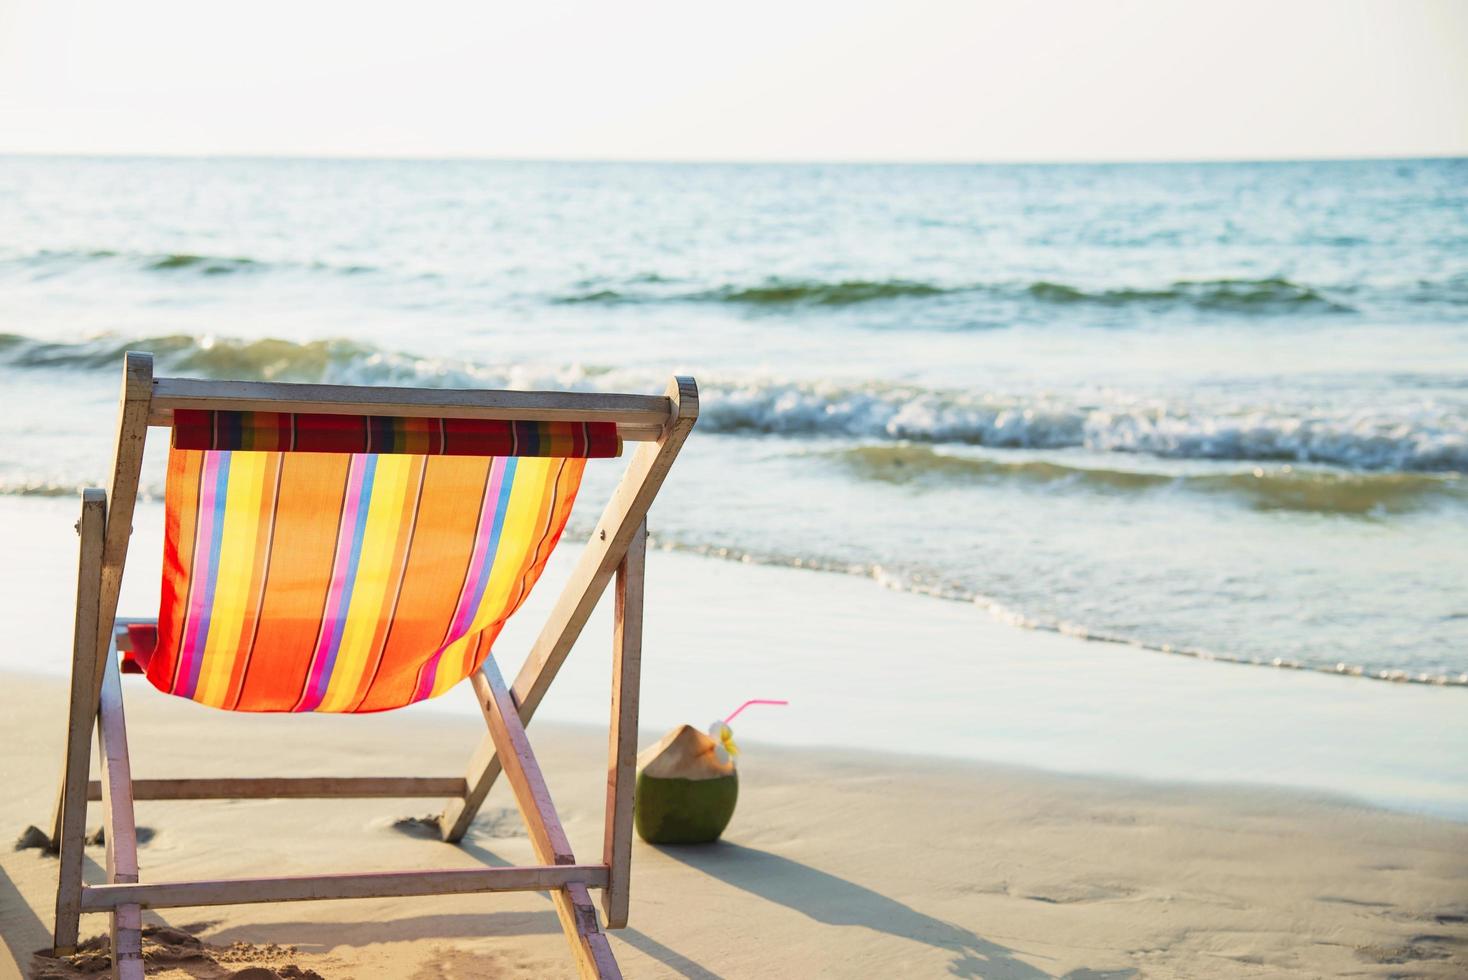 relájese en la silla de playa con piña de coco y copa de cóctel en una playa de arena limpia con mar azul y cielo despejado - concepto de relajación de fondo de naturaleza marina foto